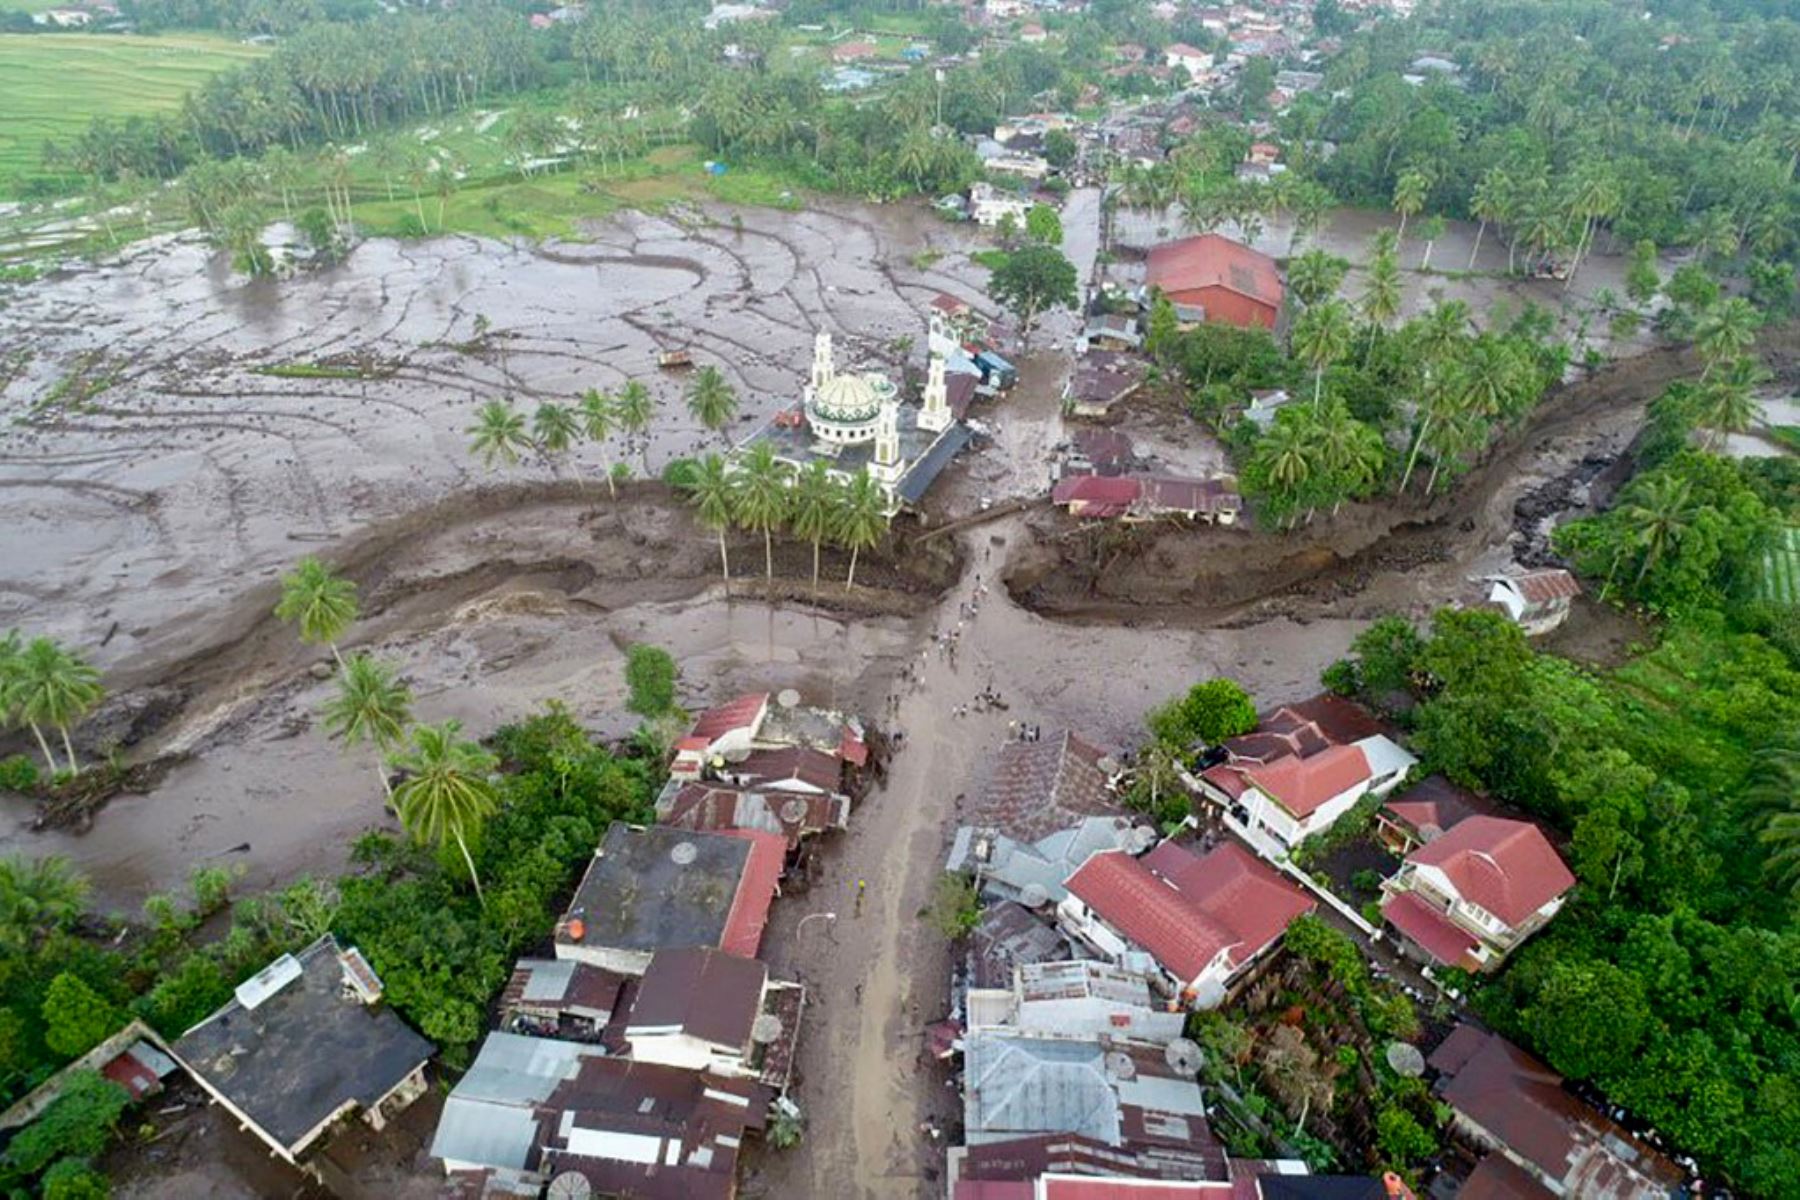 En el distrito de Agam, donde viven más de 500.000 personas, decenas de casas y edificios públicos sufrieron daños, y en el de Tanah Datar, de unos 370.000 habitantes, puentes, mezquitas y viviendas se vieron afectados. Foto: AFP